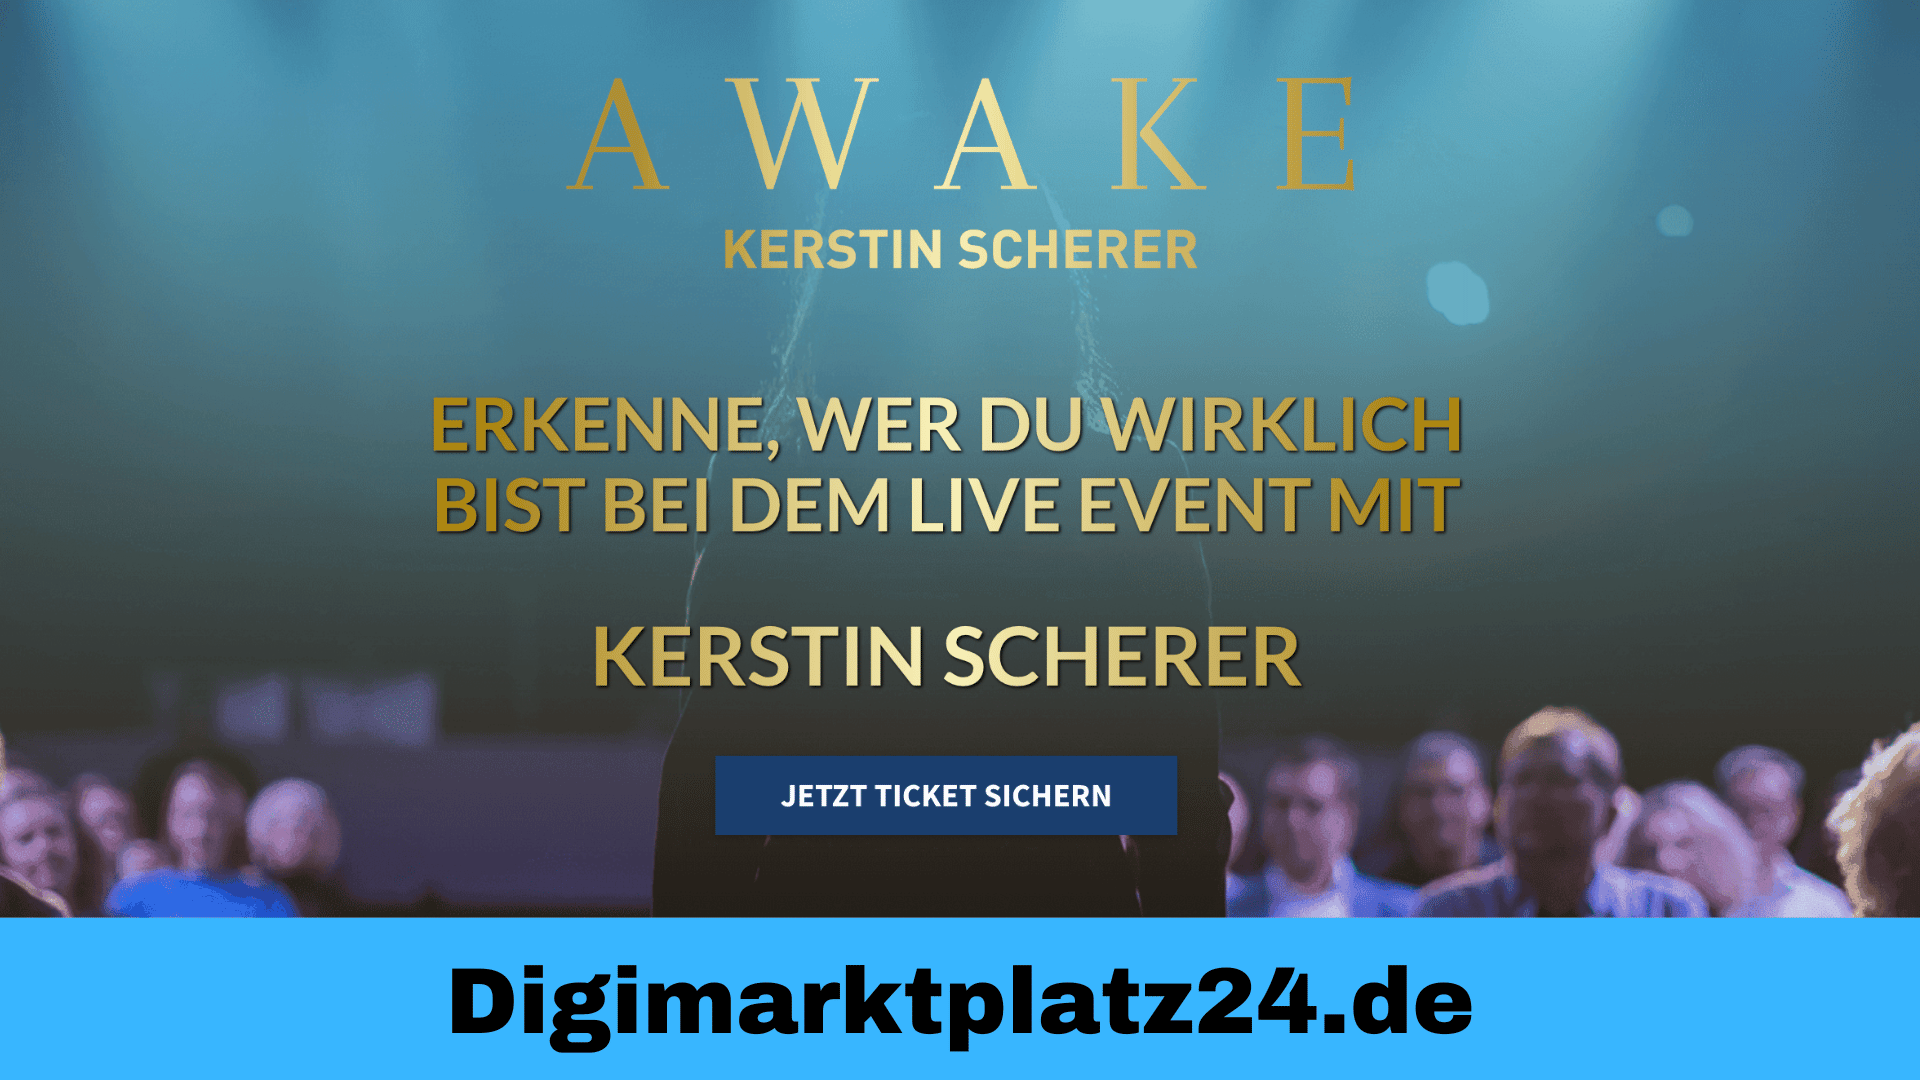 Awake Kerstin Scherer